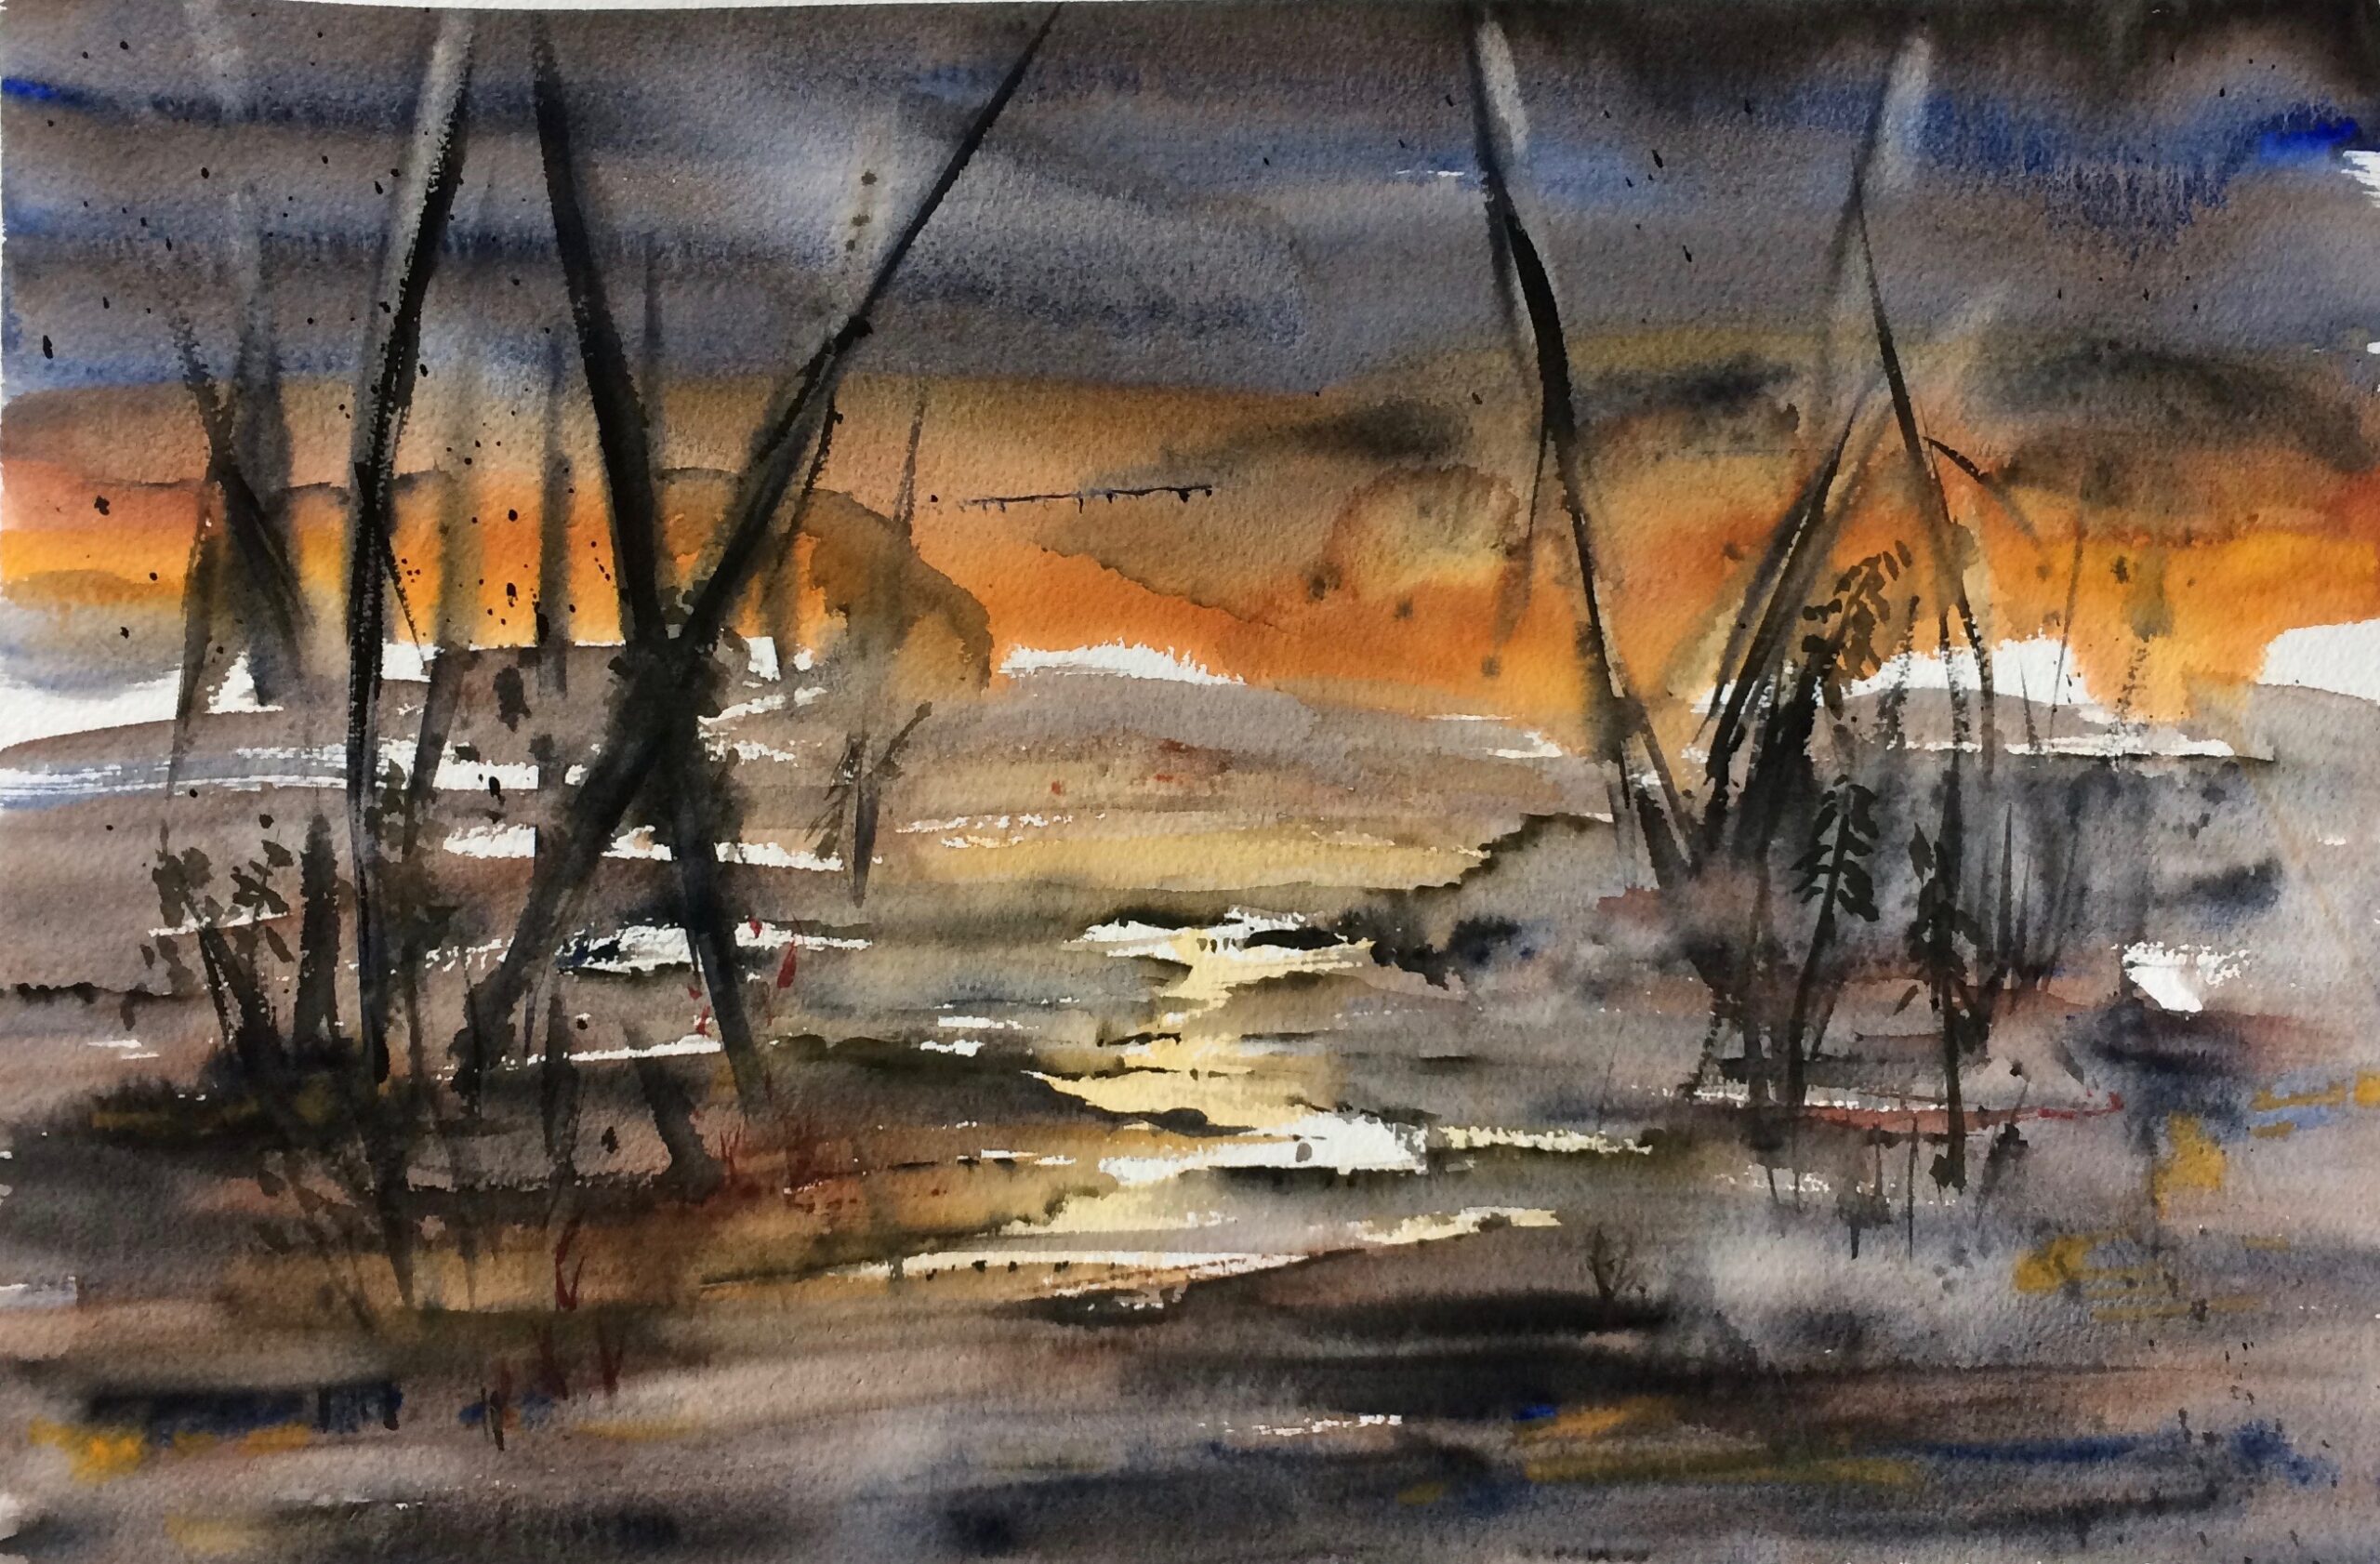 Solnedgang ved søen. 1100 kr. (54x39 cm) Indrammet